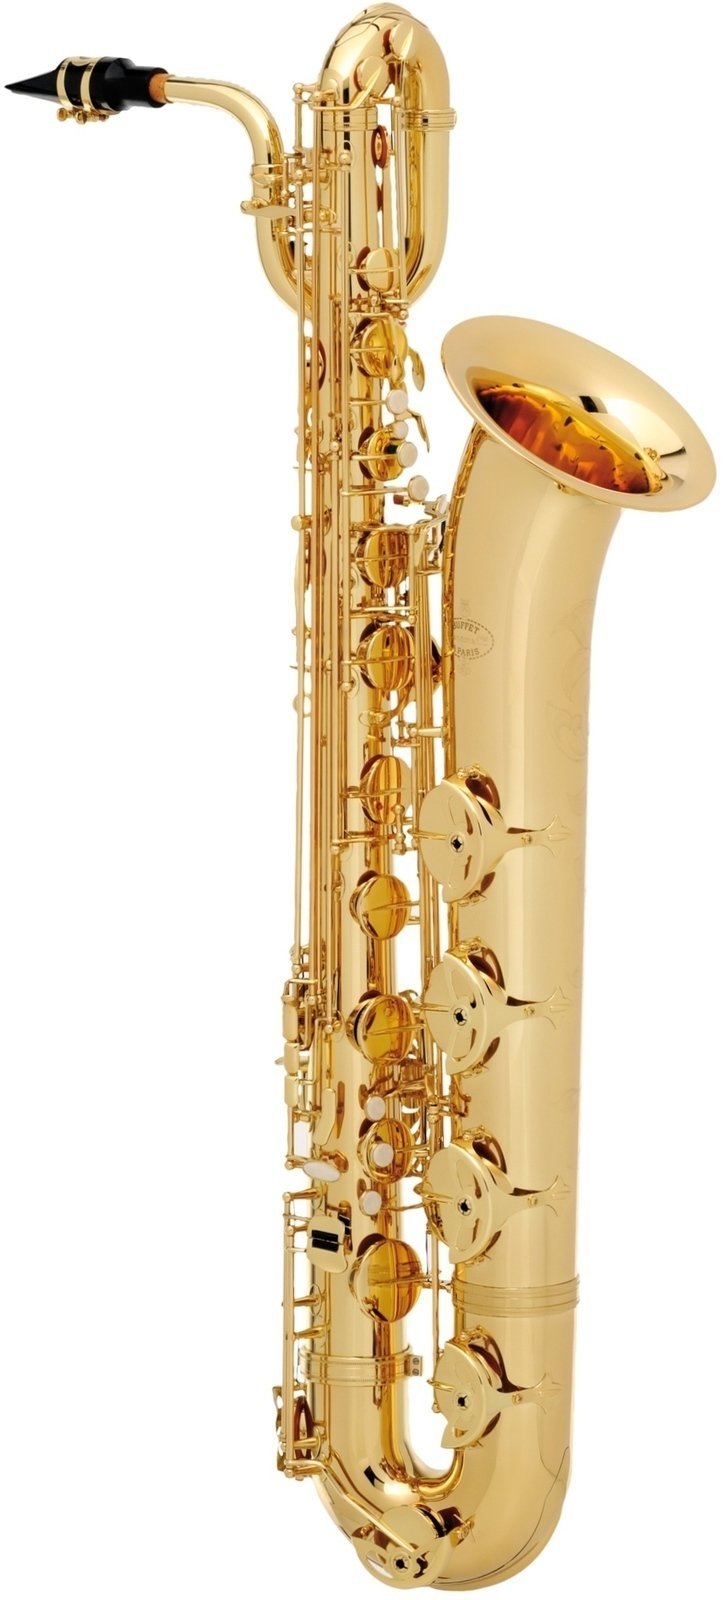 Saxofoon Buffet Crampon 400 series baritone